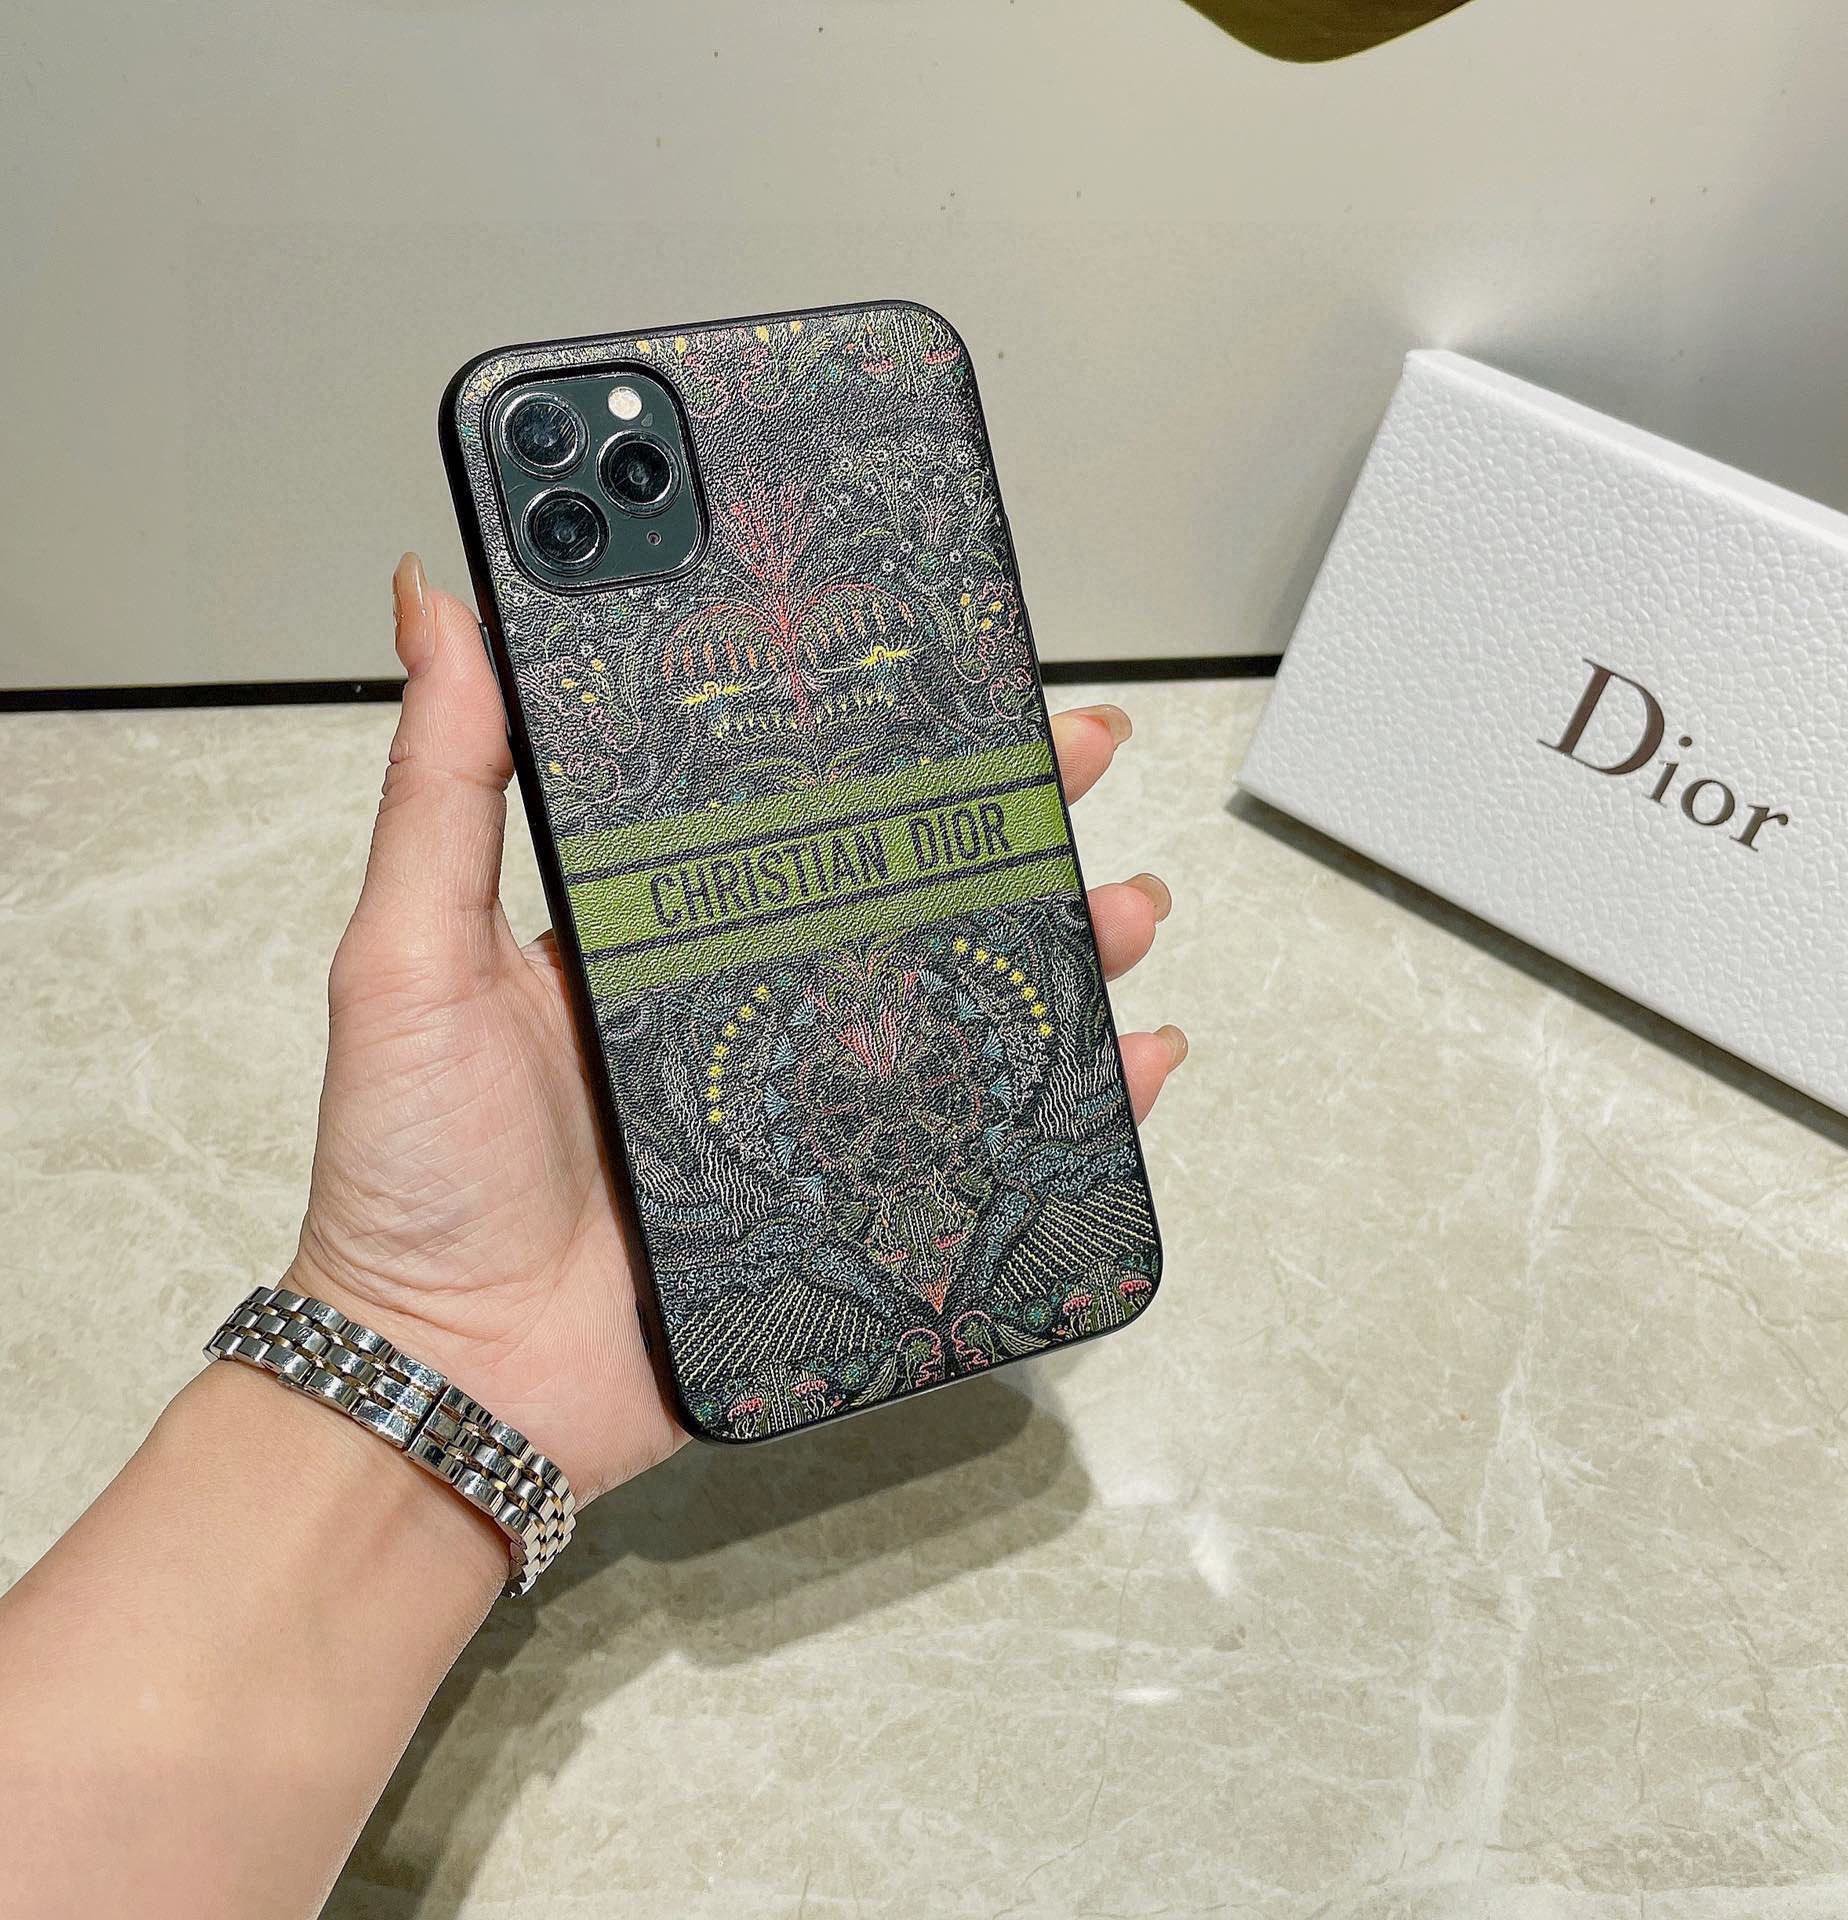 Dior官网同步原版贴皮手机壳爱之光Lightoflove系列手机壳[666][666]型号为了不出现报